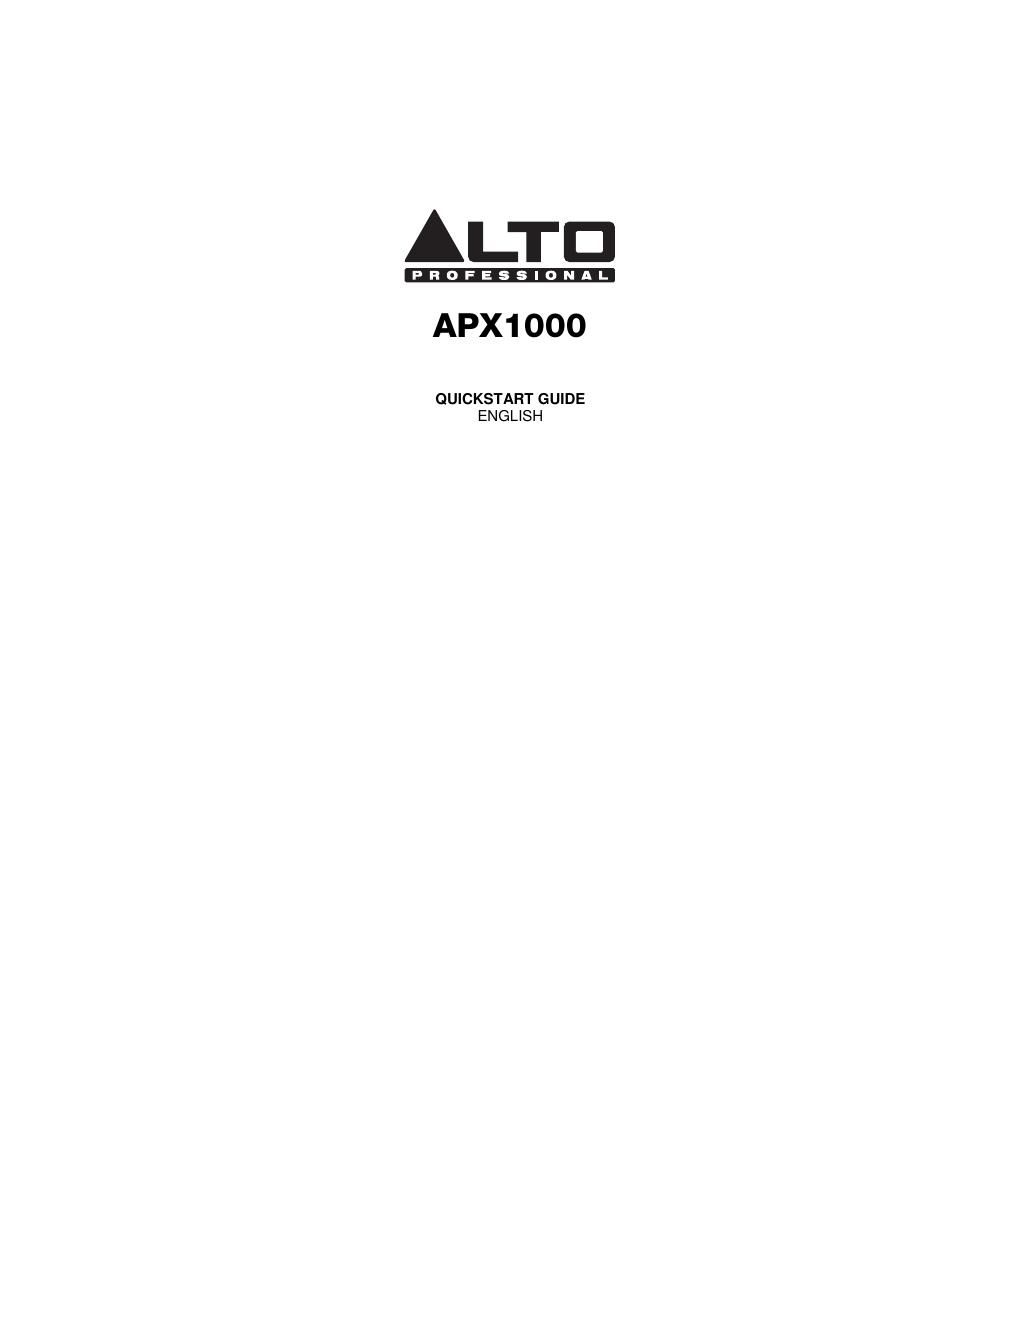 alto apx 1000 quickstart guide